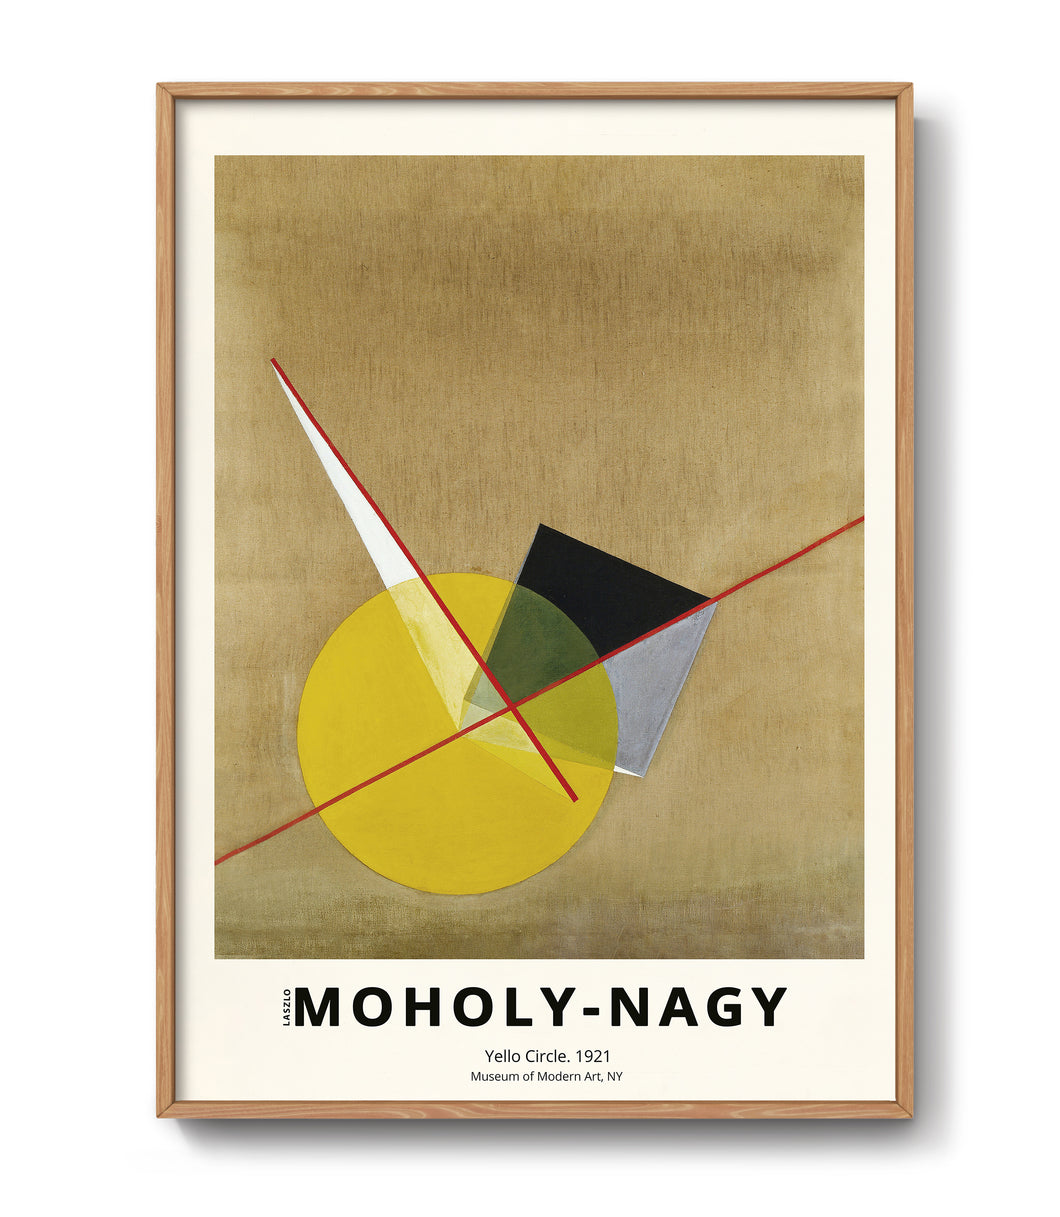 Art poster by László Moholy-Nagy Yello Circle